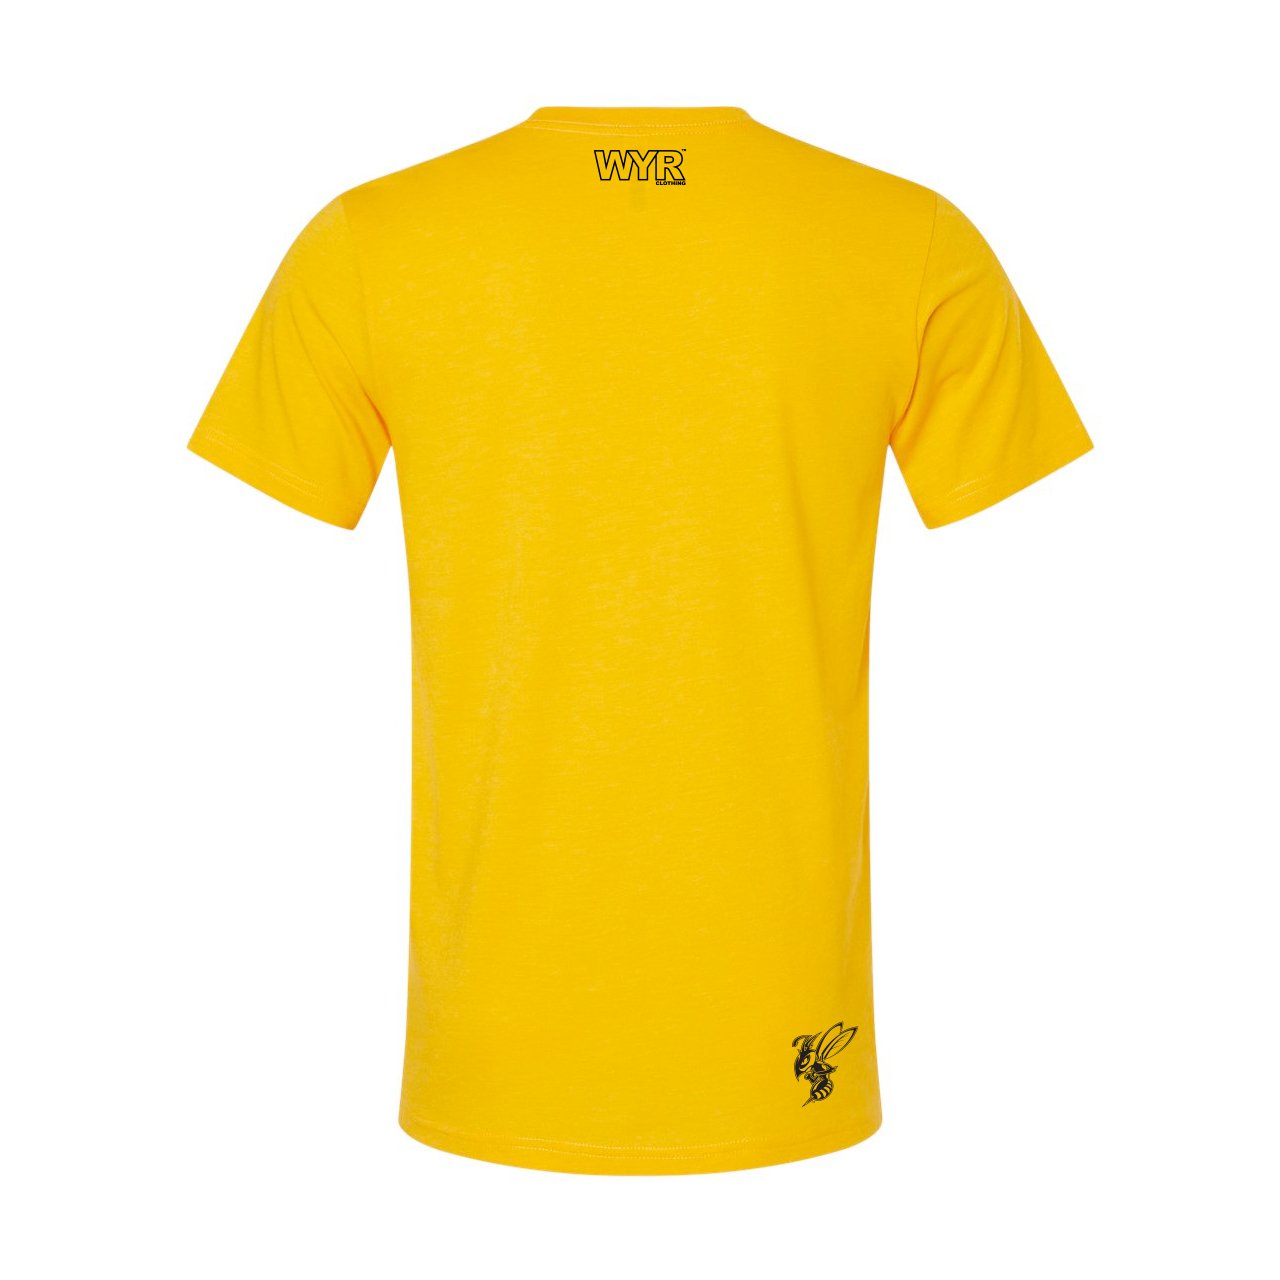 
                  
                    MSU Billings T-Shirt - WYR
                  
                